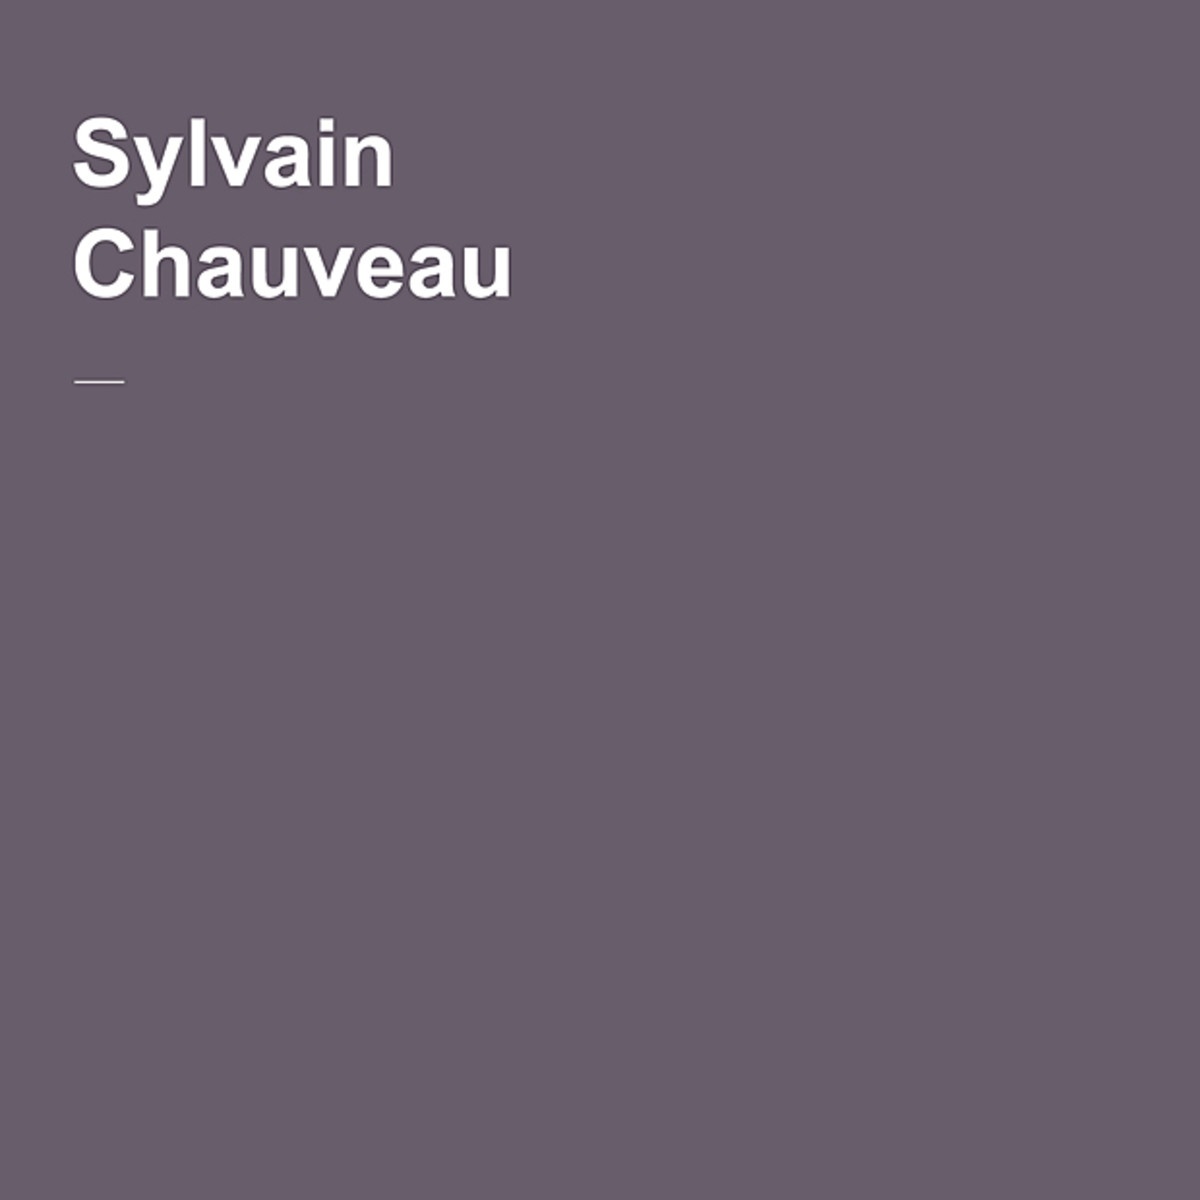 Dernie re Etape avant le Silence Sylvain Chauveau Remix